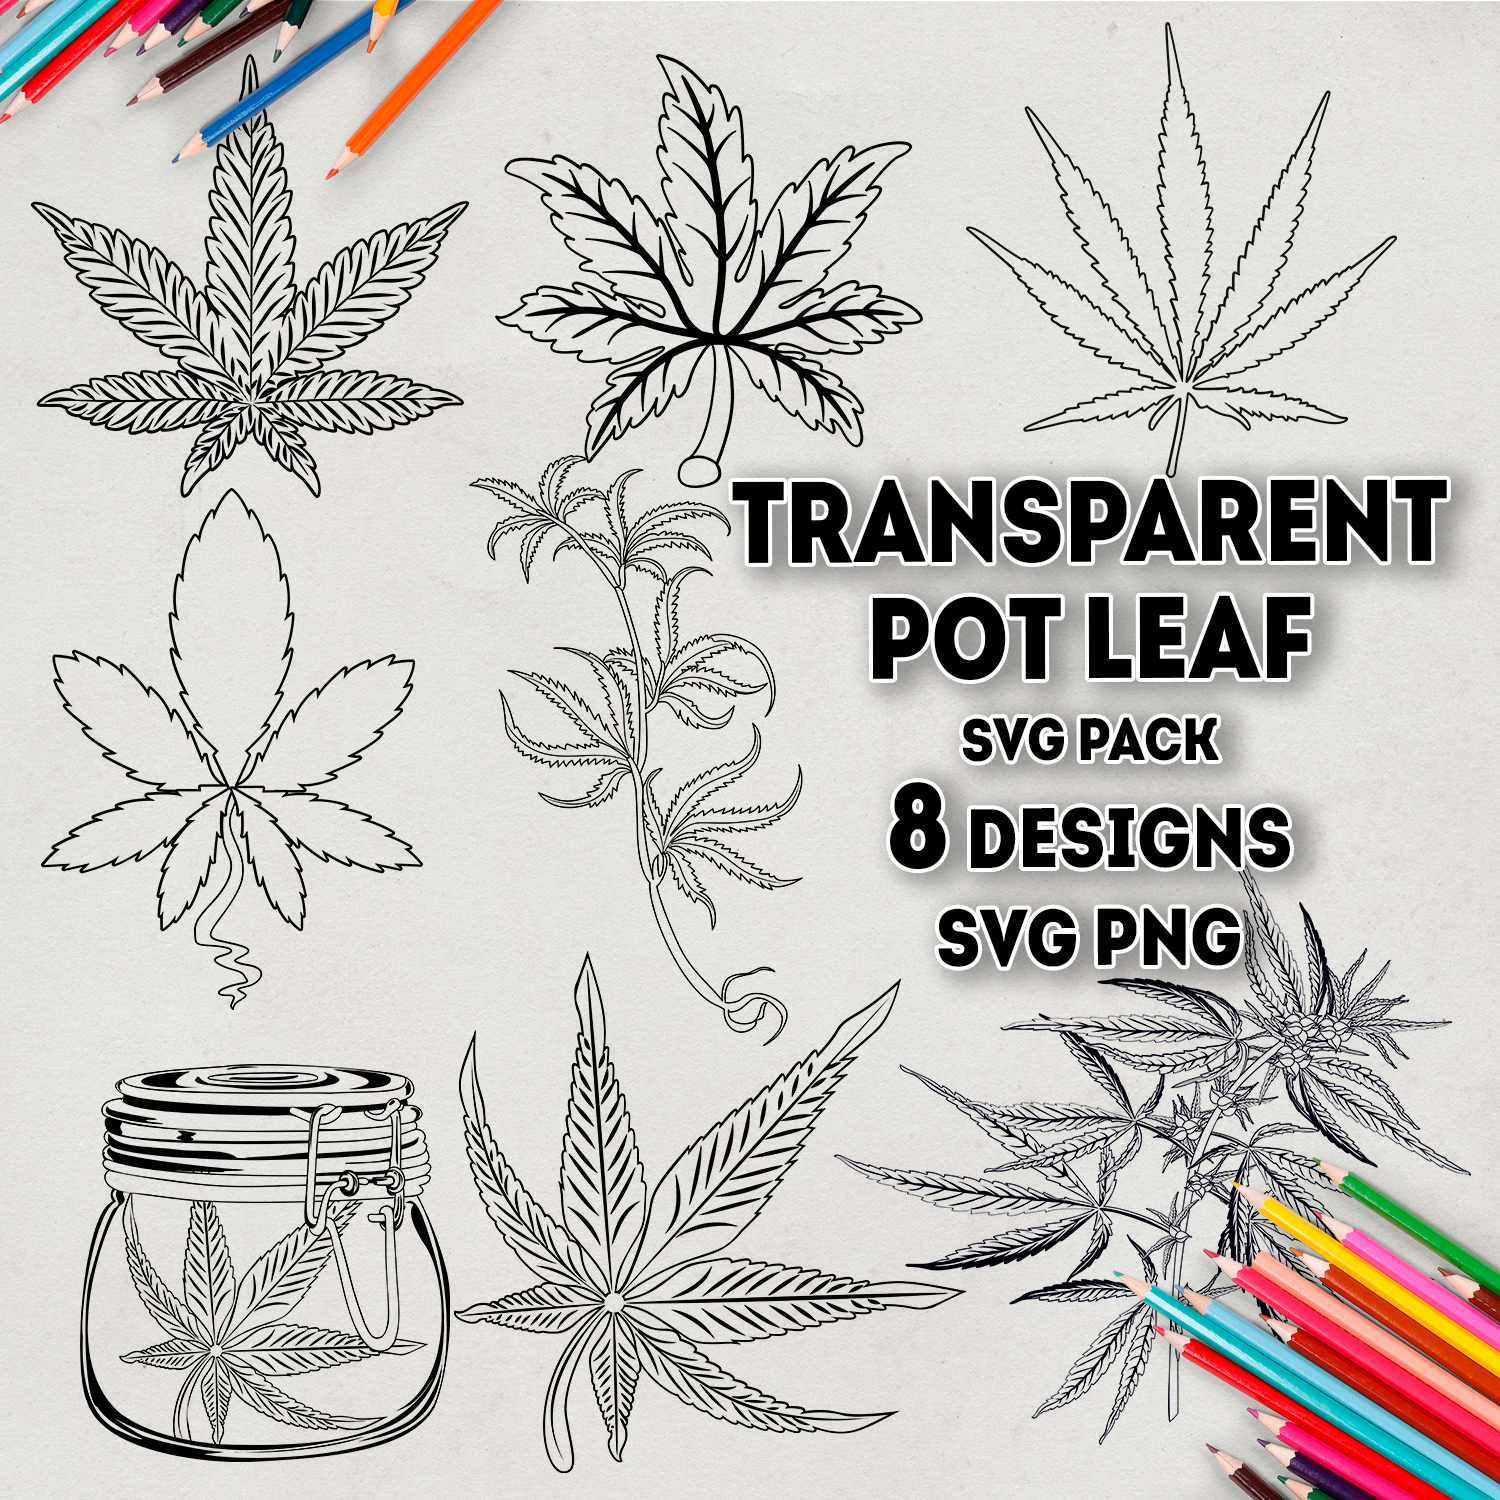 Images with transparent pot leaf svg.